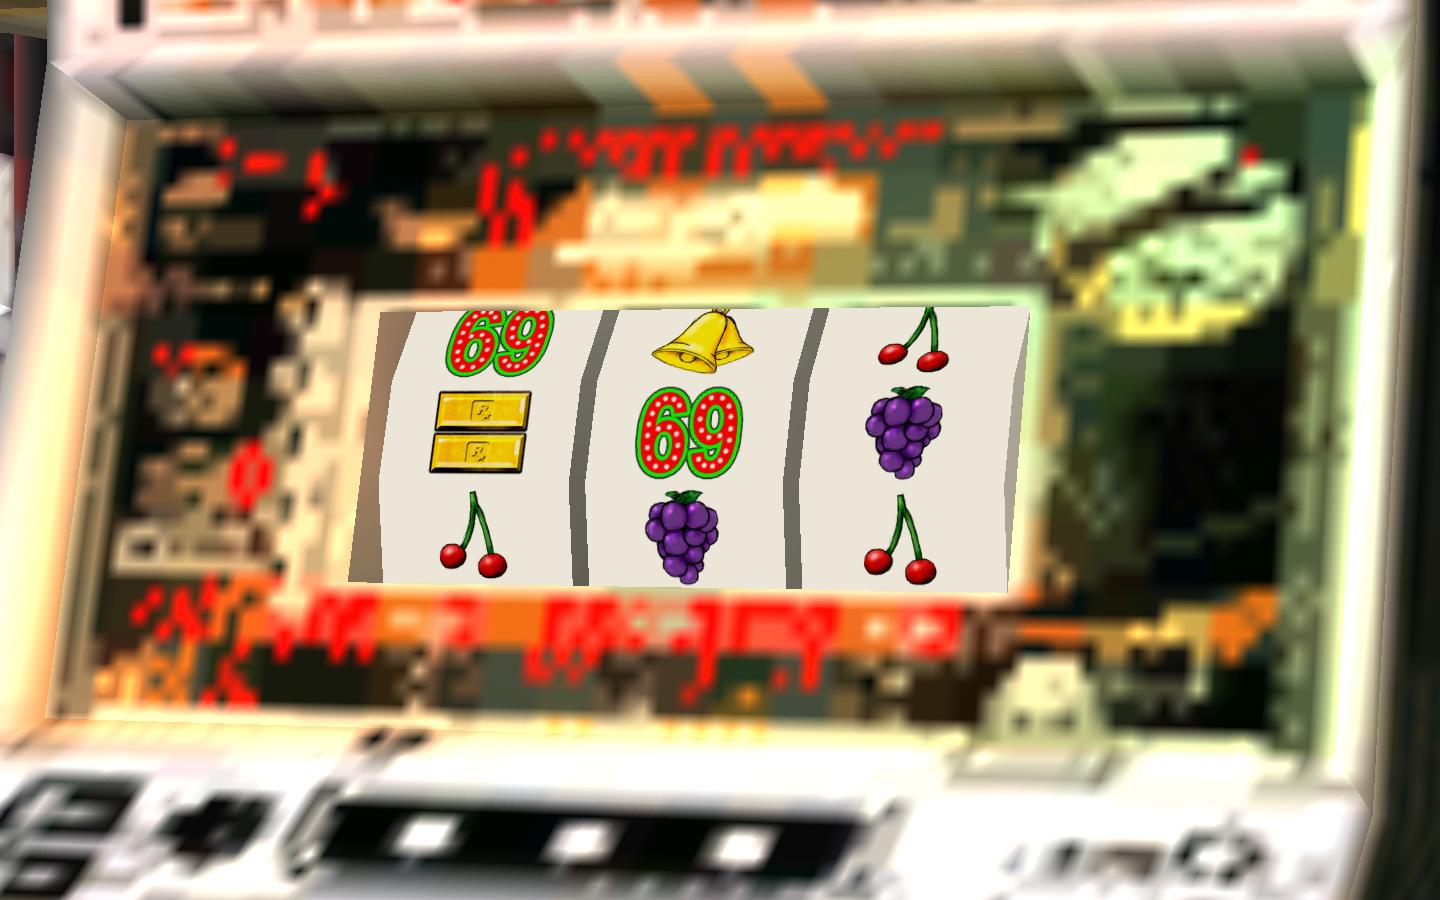 Juegos casino Grand Bay algoritmo maquinas tragamonedas - 57845